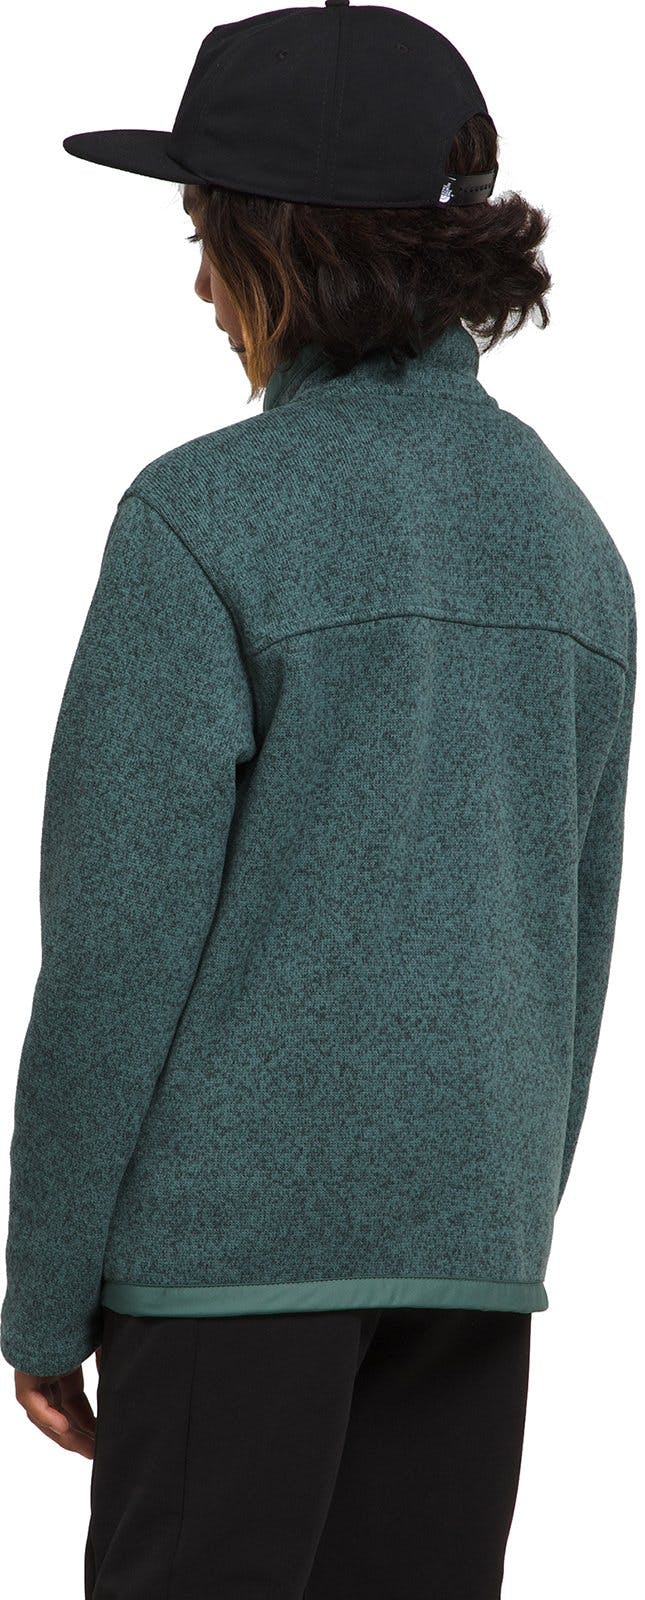 Numéro de l'image de la galerie de produits 2 pour le produit Manteau à glissière pleine longueur Sweater Fleece - Garçon